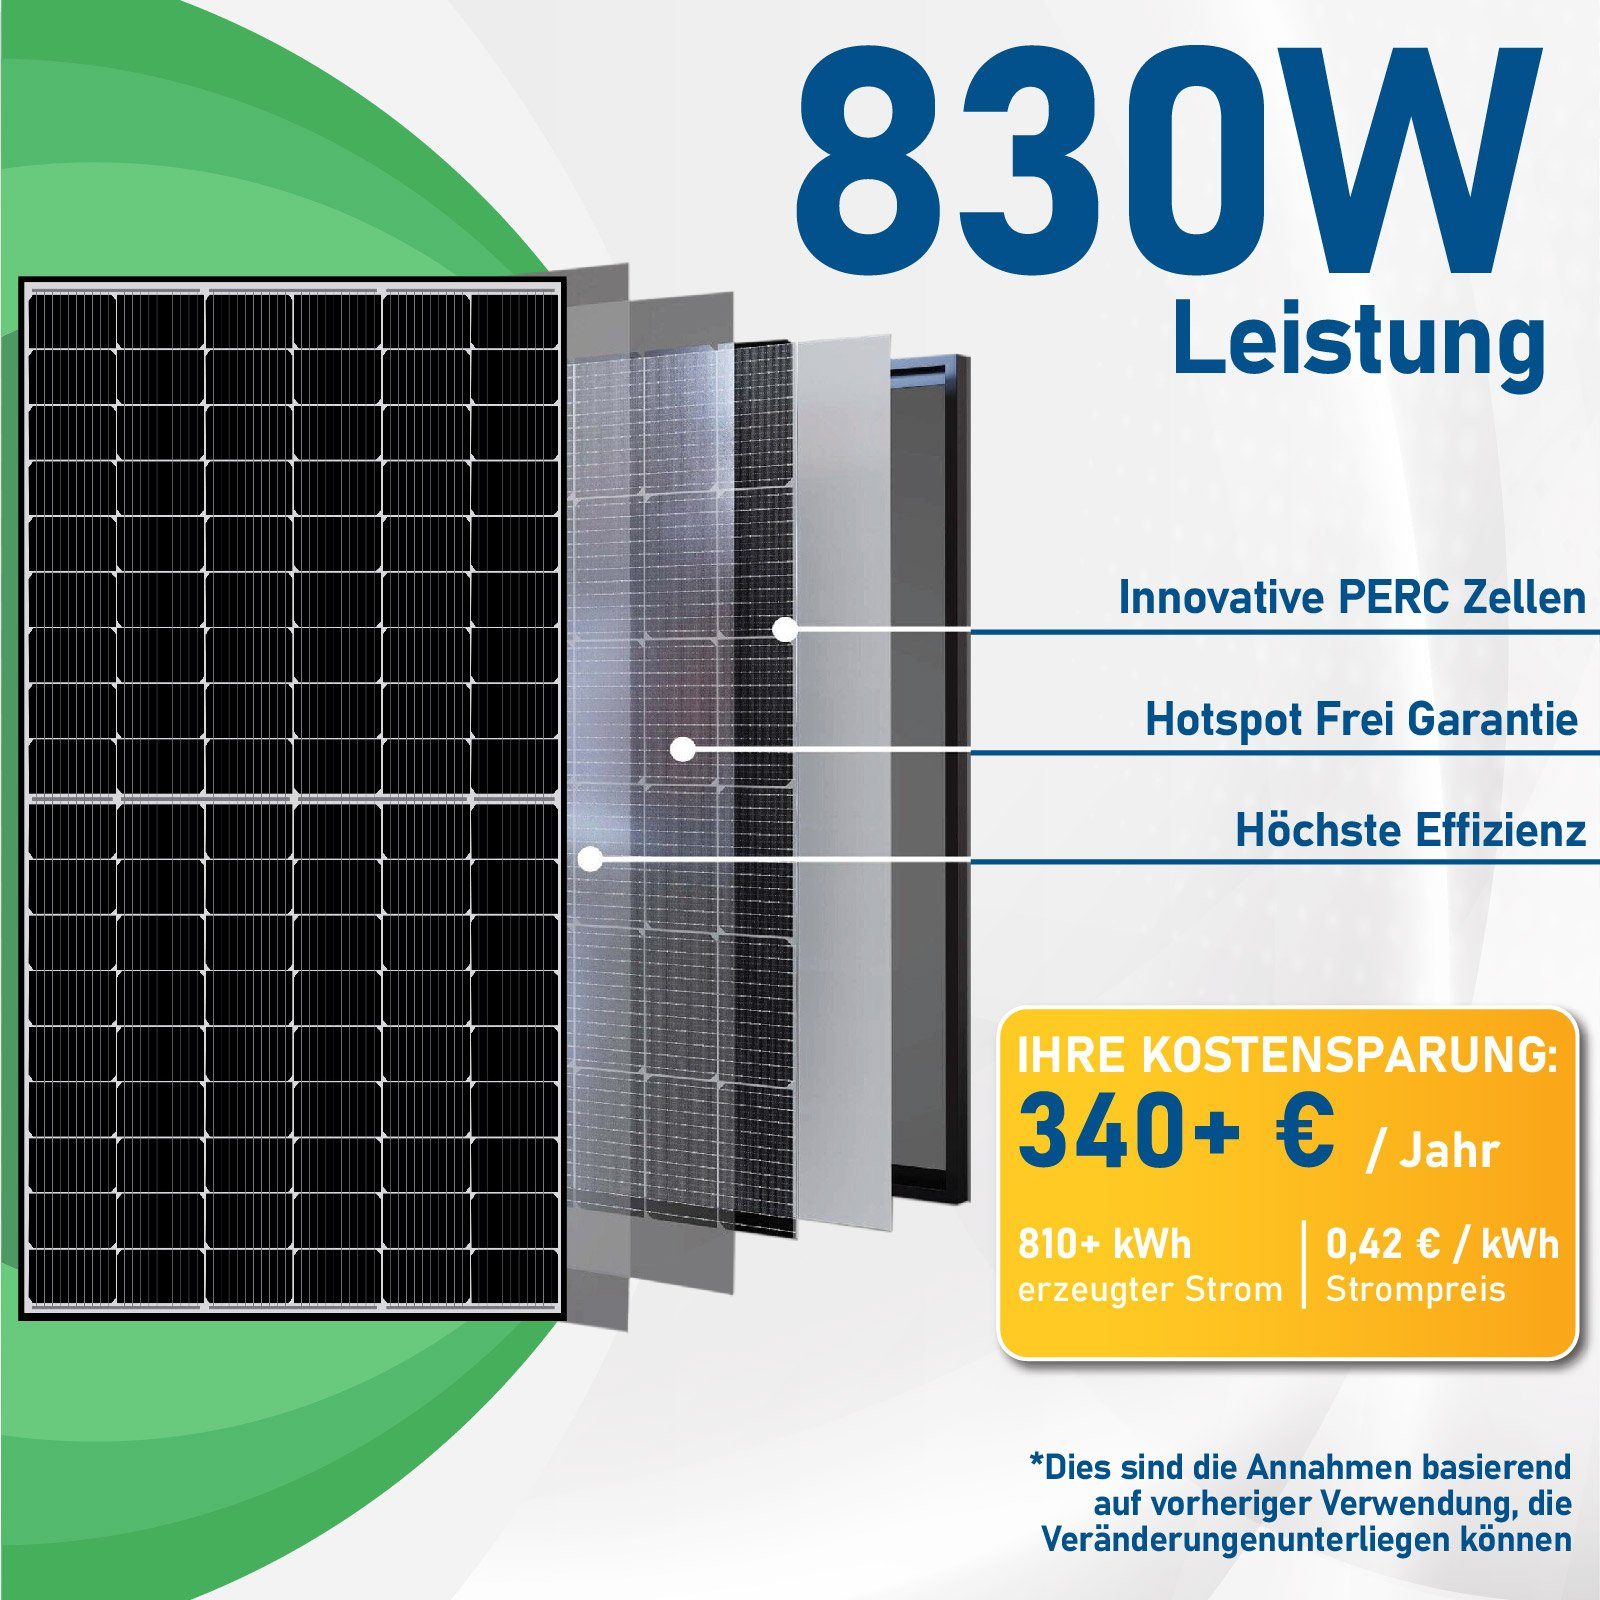 Campergold Solaranlage Mit PV-Montage, Ziegeldach Halterung, Photovoltaik Wechselrichter Hypontech 800W Balkonkraftwerk, WIFI 830W Upgradefähiger